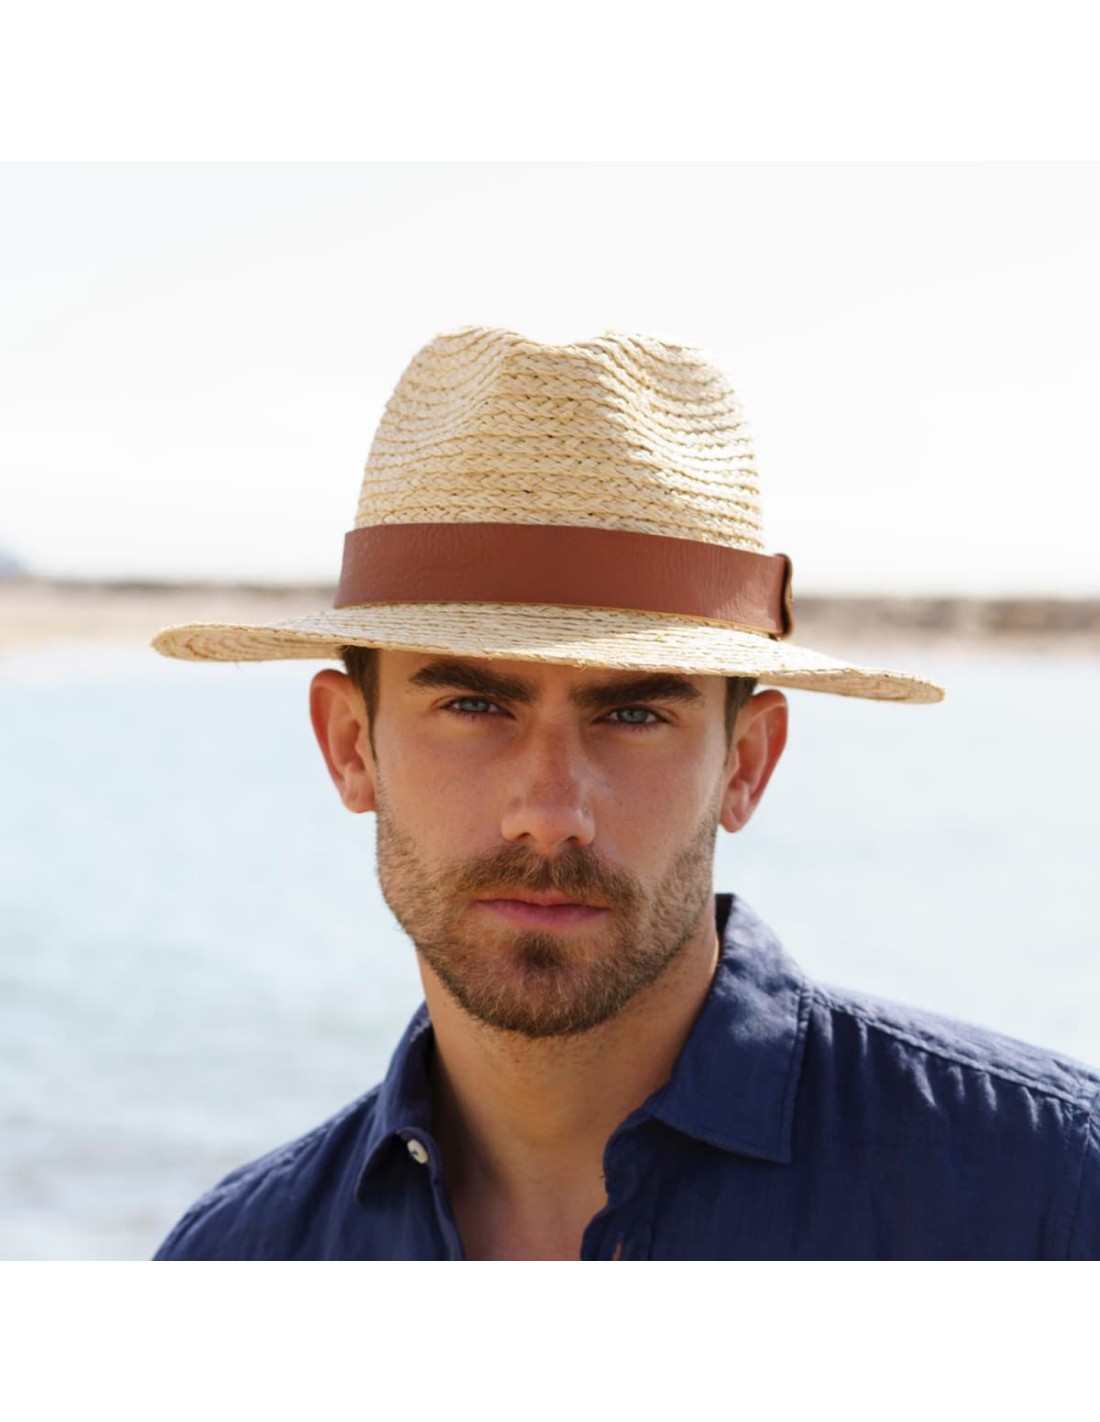 Sombrero Hombre Ala Corta: Descubre la Elegancia en 1 Click |100% Rafia Natural